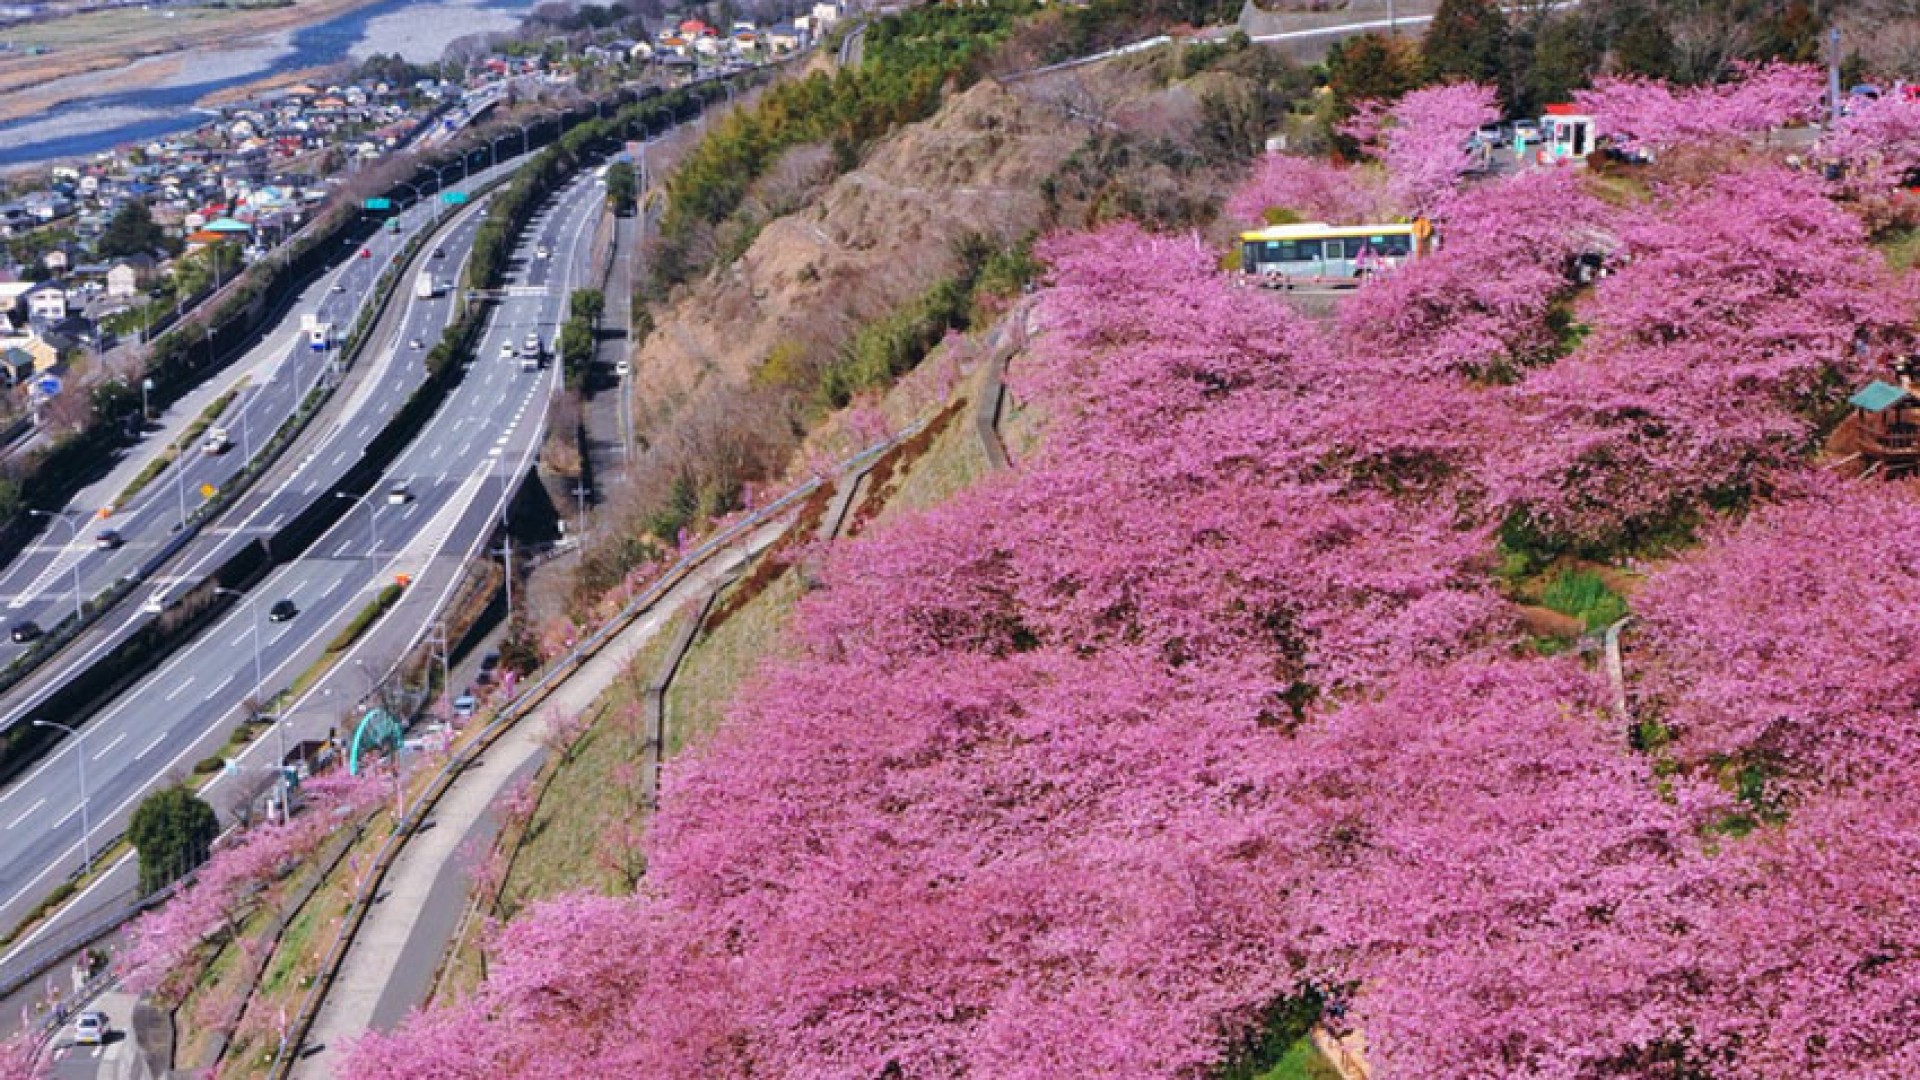 สวนนิชิฮิระบะทะเกะ "เทศกาลดอกซากุระมัตซึตดะ" (ต้นซากุระ)